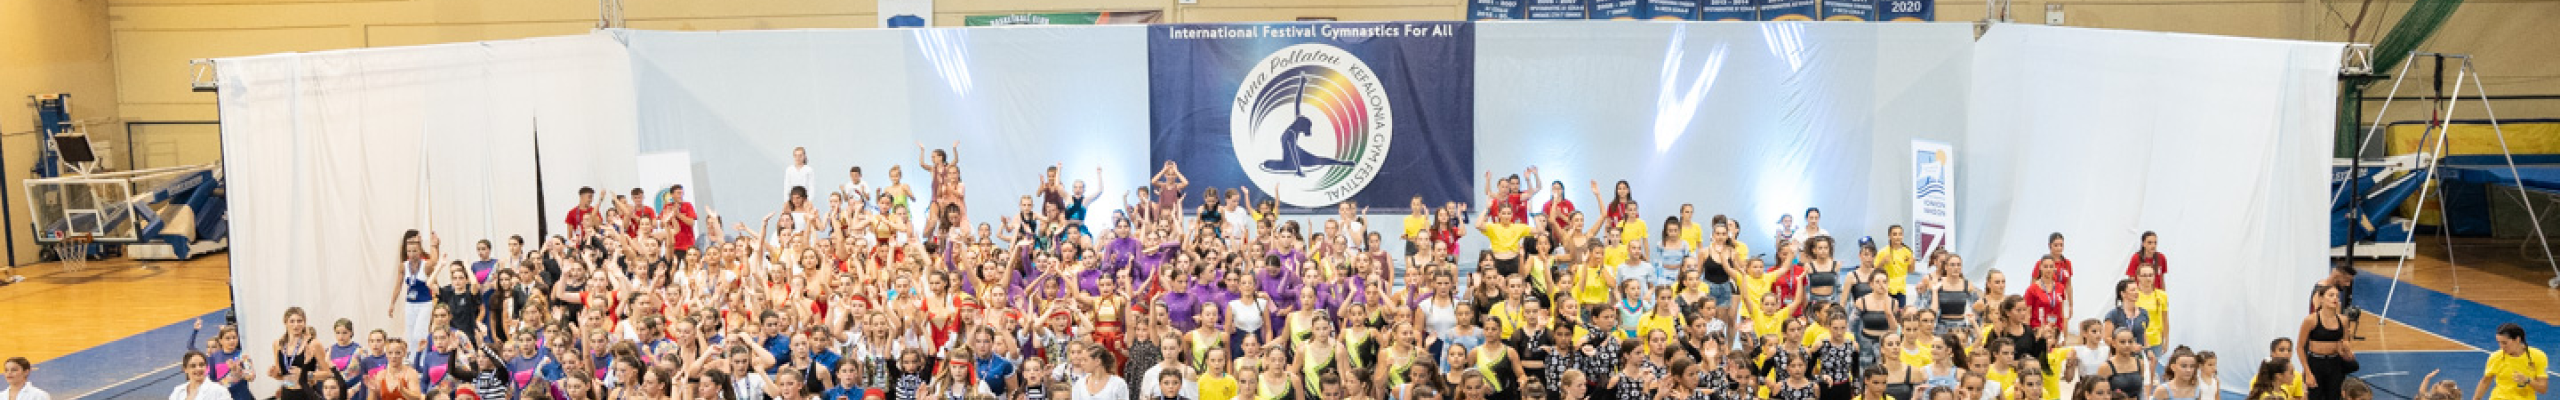 Με τεράστια επιτυχία έπεσε η αυλαία του 34ου Διεθνούς Φεστιβάλ Γυμναστικής για Όλους«Άννα Πολλάτου», που πραγματοποιήθηκε από 27 Ιουνίου έως 30 Ιουνίου στην Κεφαλονιά